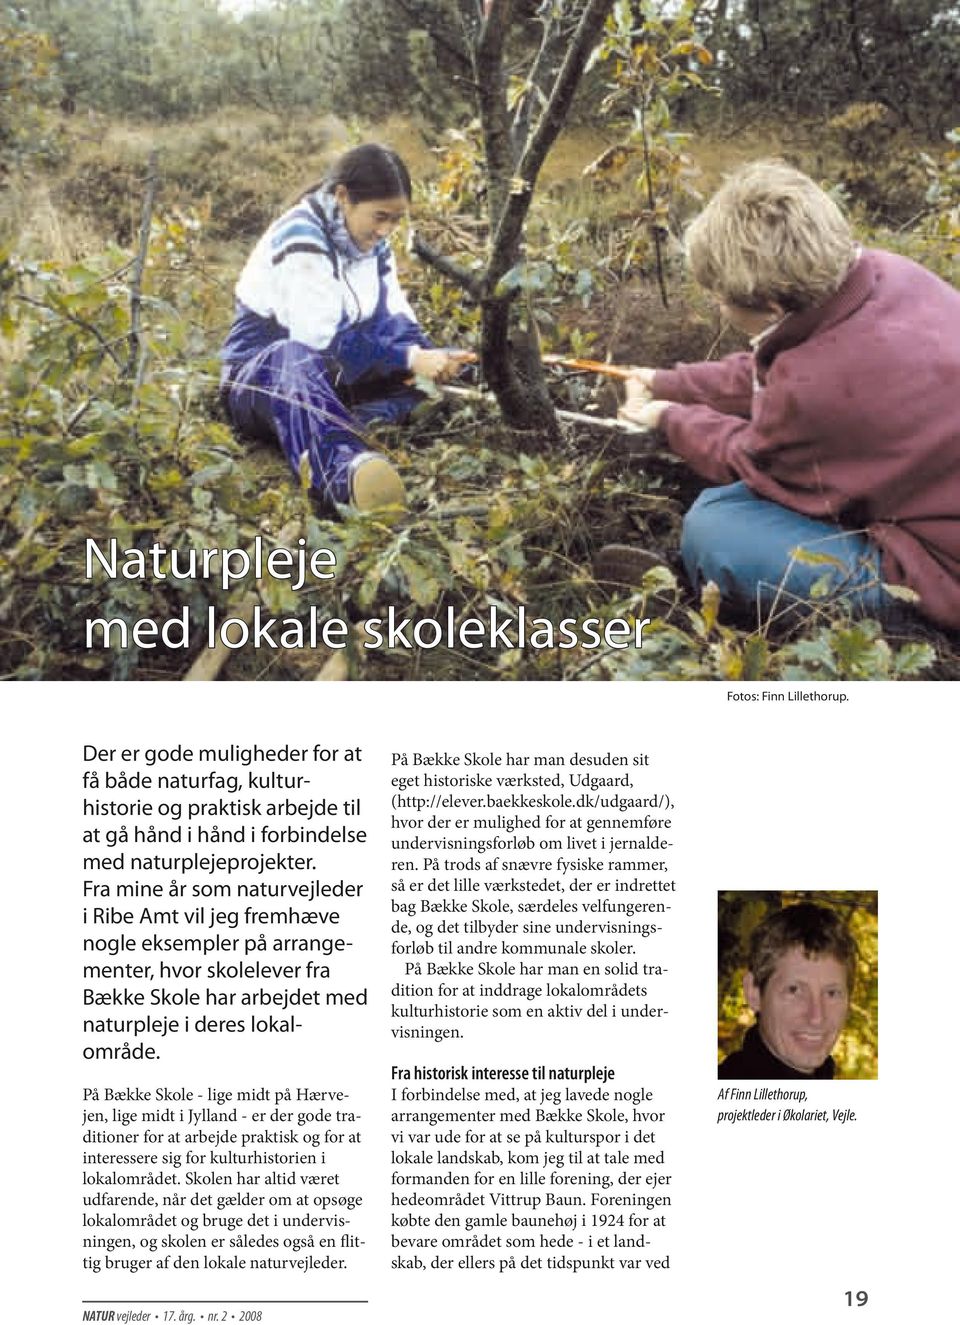 Fra mine år som naturvejleder i Ribe Amt vil jeg fremhæve nogle eksempler på arrangementer, hvor skolelever fra Bække Skole har arbejdet med naturpleje i deres lokalområde.